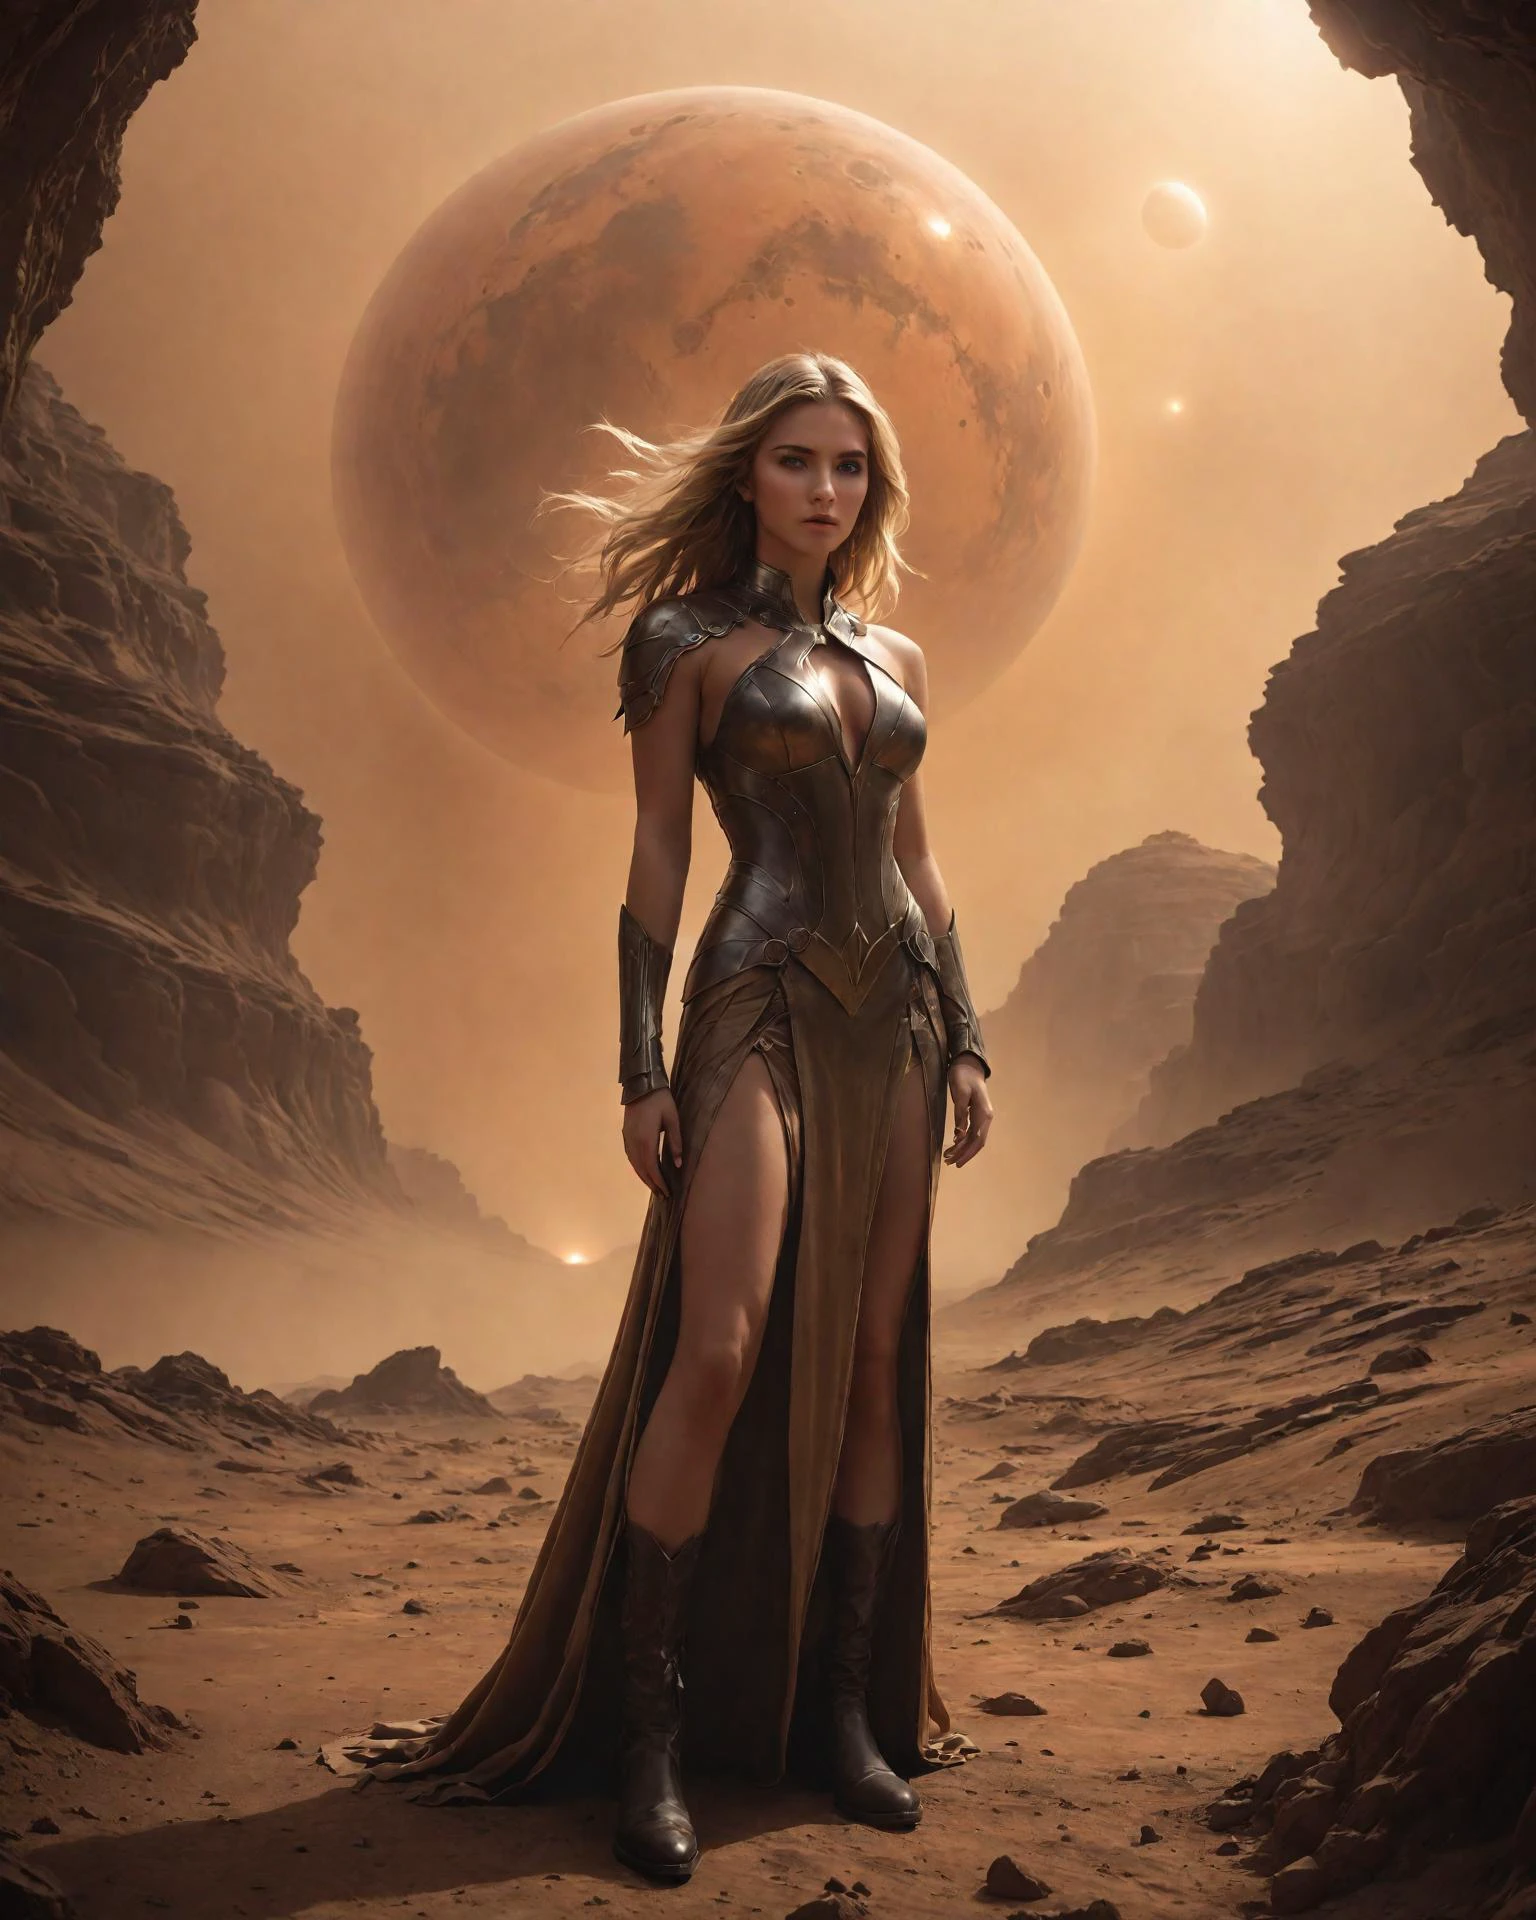 ภาพถ่ายดิจิทัล, เจ้าหญิงนักรบวัย 20 ปีที่น่าทึ่งยืนอยู่บนพื้นผิวดาวอังคาร, (ใบหน้าที่มีรายละเอียด), ดวงตาที่โดดเด่น, สวมชุดยาว [ผ้าลินิน:หุ้มเกราะ:5] แต่งกายด้วยไหล่เปลือย, คอเสื้อพรวดพราด, กรีดขา, รองเท้าบูทหนังต่อสู้, รูปร่างเพรียวบางแข็งแรง, เธอเป็นหญิงสาวตัวเล็กแต่แข็งแกร่งแม้จะมีขนาดตัวก็ตาม, การแสดงออกที่รุนแรง, ริมฝีปากเม้มเข้าหากันแน่น, ผมยาวสีบลอนด์ที่งดงาม, หมอกสีส้มเรืองแสงลอยอยู่เหนือสนามรบที่ว่างเปล่า, บนดาวเคราะห์สีแดงบนภูเขาอันห่างไกลและปีศาจฝุ่นข่มขวัญภูมิทัศน์อันขรุขระที่ไม่เป็นมิตร, พายุฝุ่น, สายฟ้าสีแดง, ลมแรง, การตั้งค่าแฟนตาซีไซไฟ, แสงภาพยนตร์, 